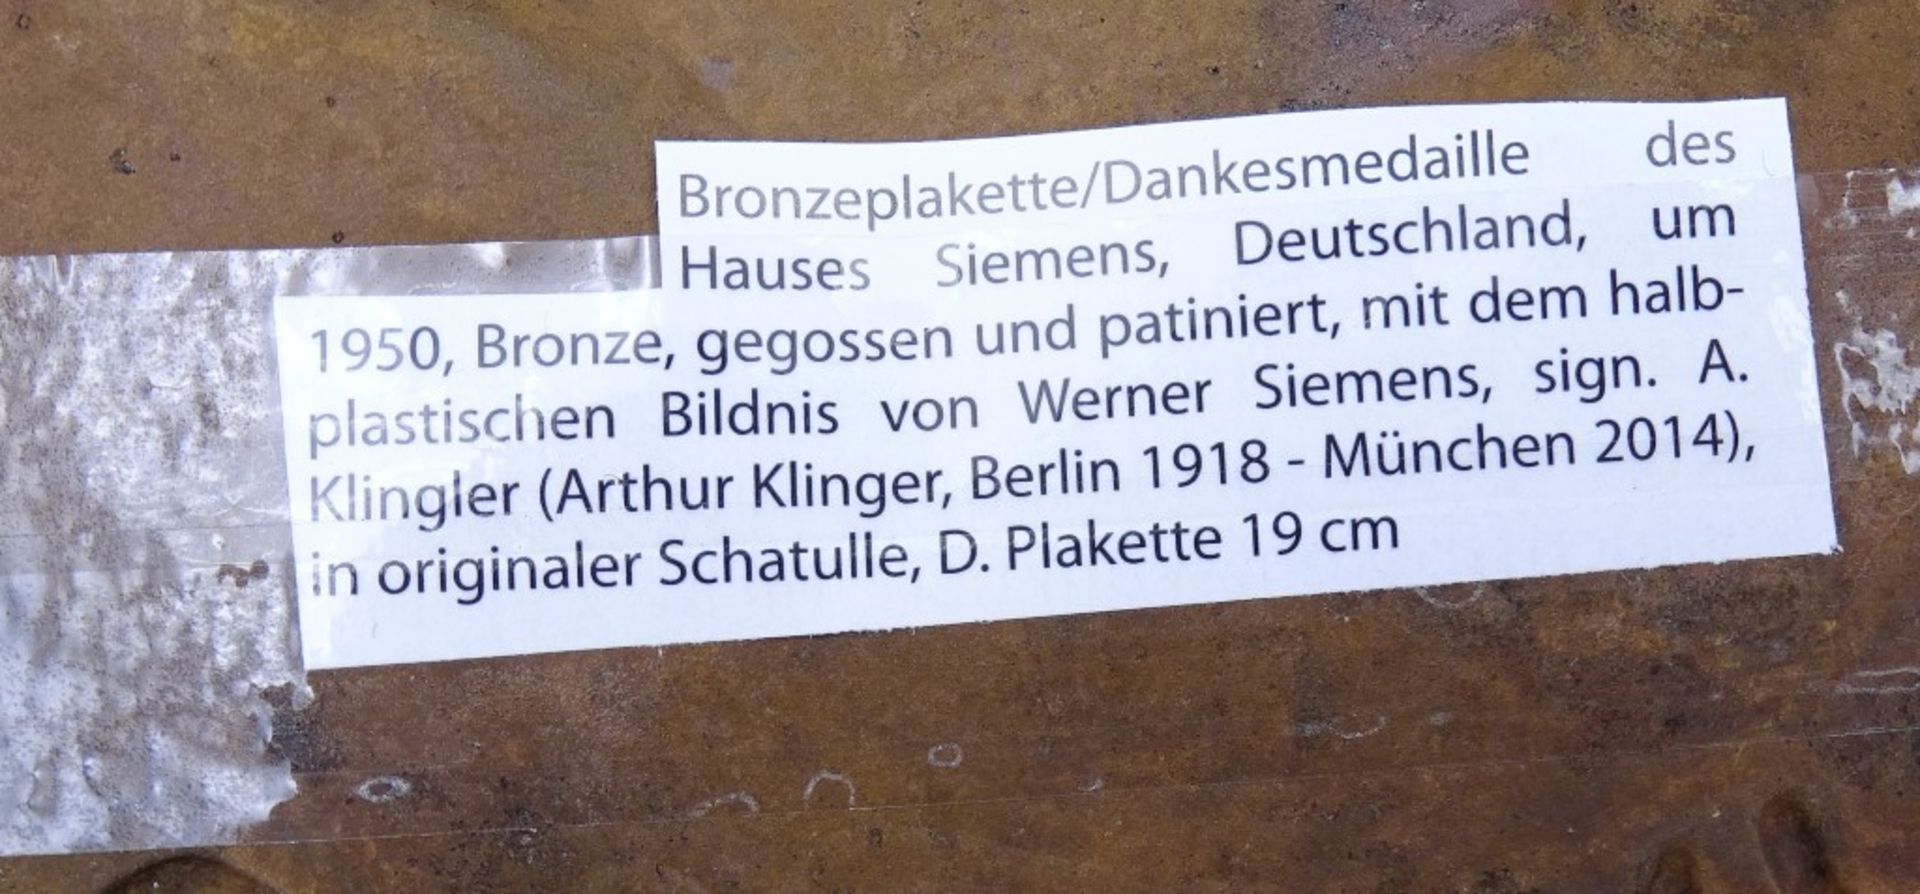 Große Bronze Medaille Werner v.Siemens,Arthur Klinger 1918-2014 in Schachtel,d-19c"""" - Bild 3 aus 4